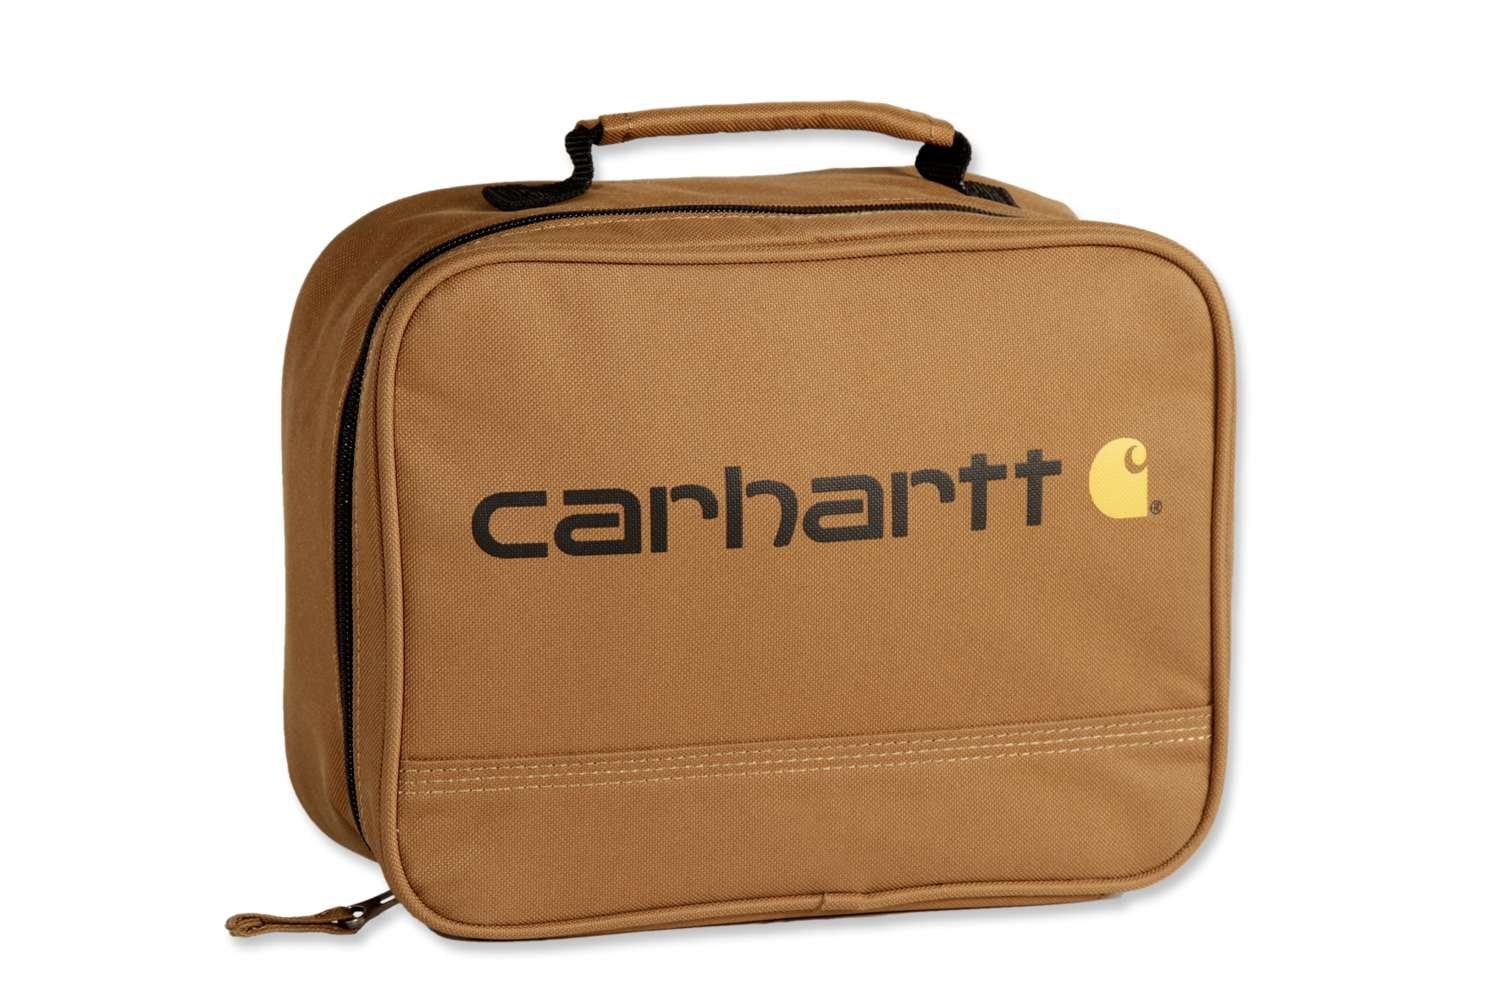 Carhartt Sporttasche Carhartt Unisex Lunch Box carhartt brown